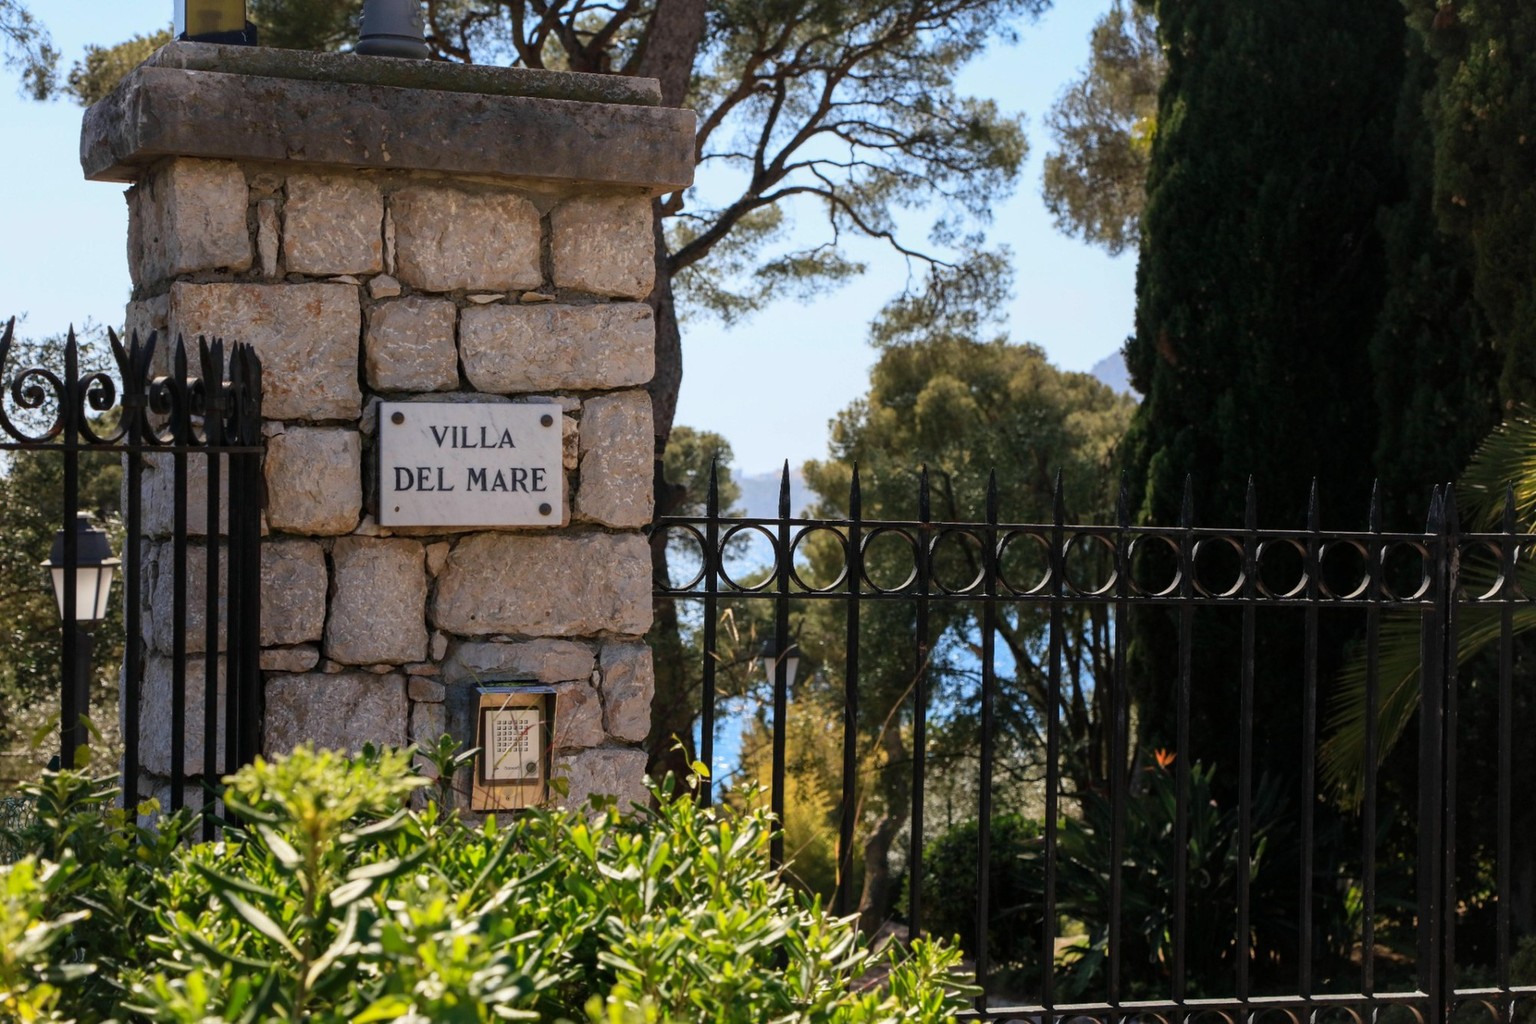 Eingang zur Villa Del Mare am Cap Martin, Roquebrune Cap Martin, Departement Alpes-Maritimes, Region Provence Alpes Cote d Azur, Frankreich, Mittelmeer. Die Villa gehörte dem Diktator von Zaire Kongo  ...